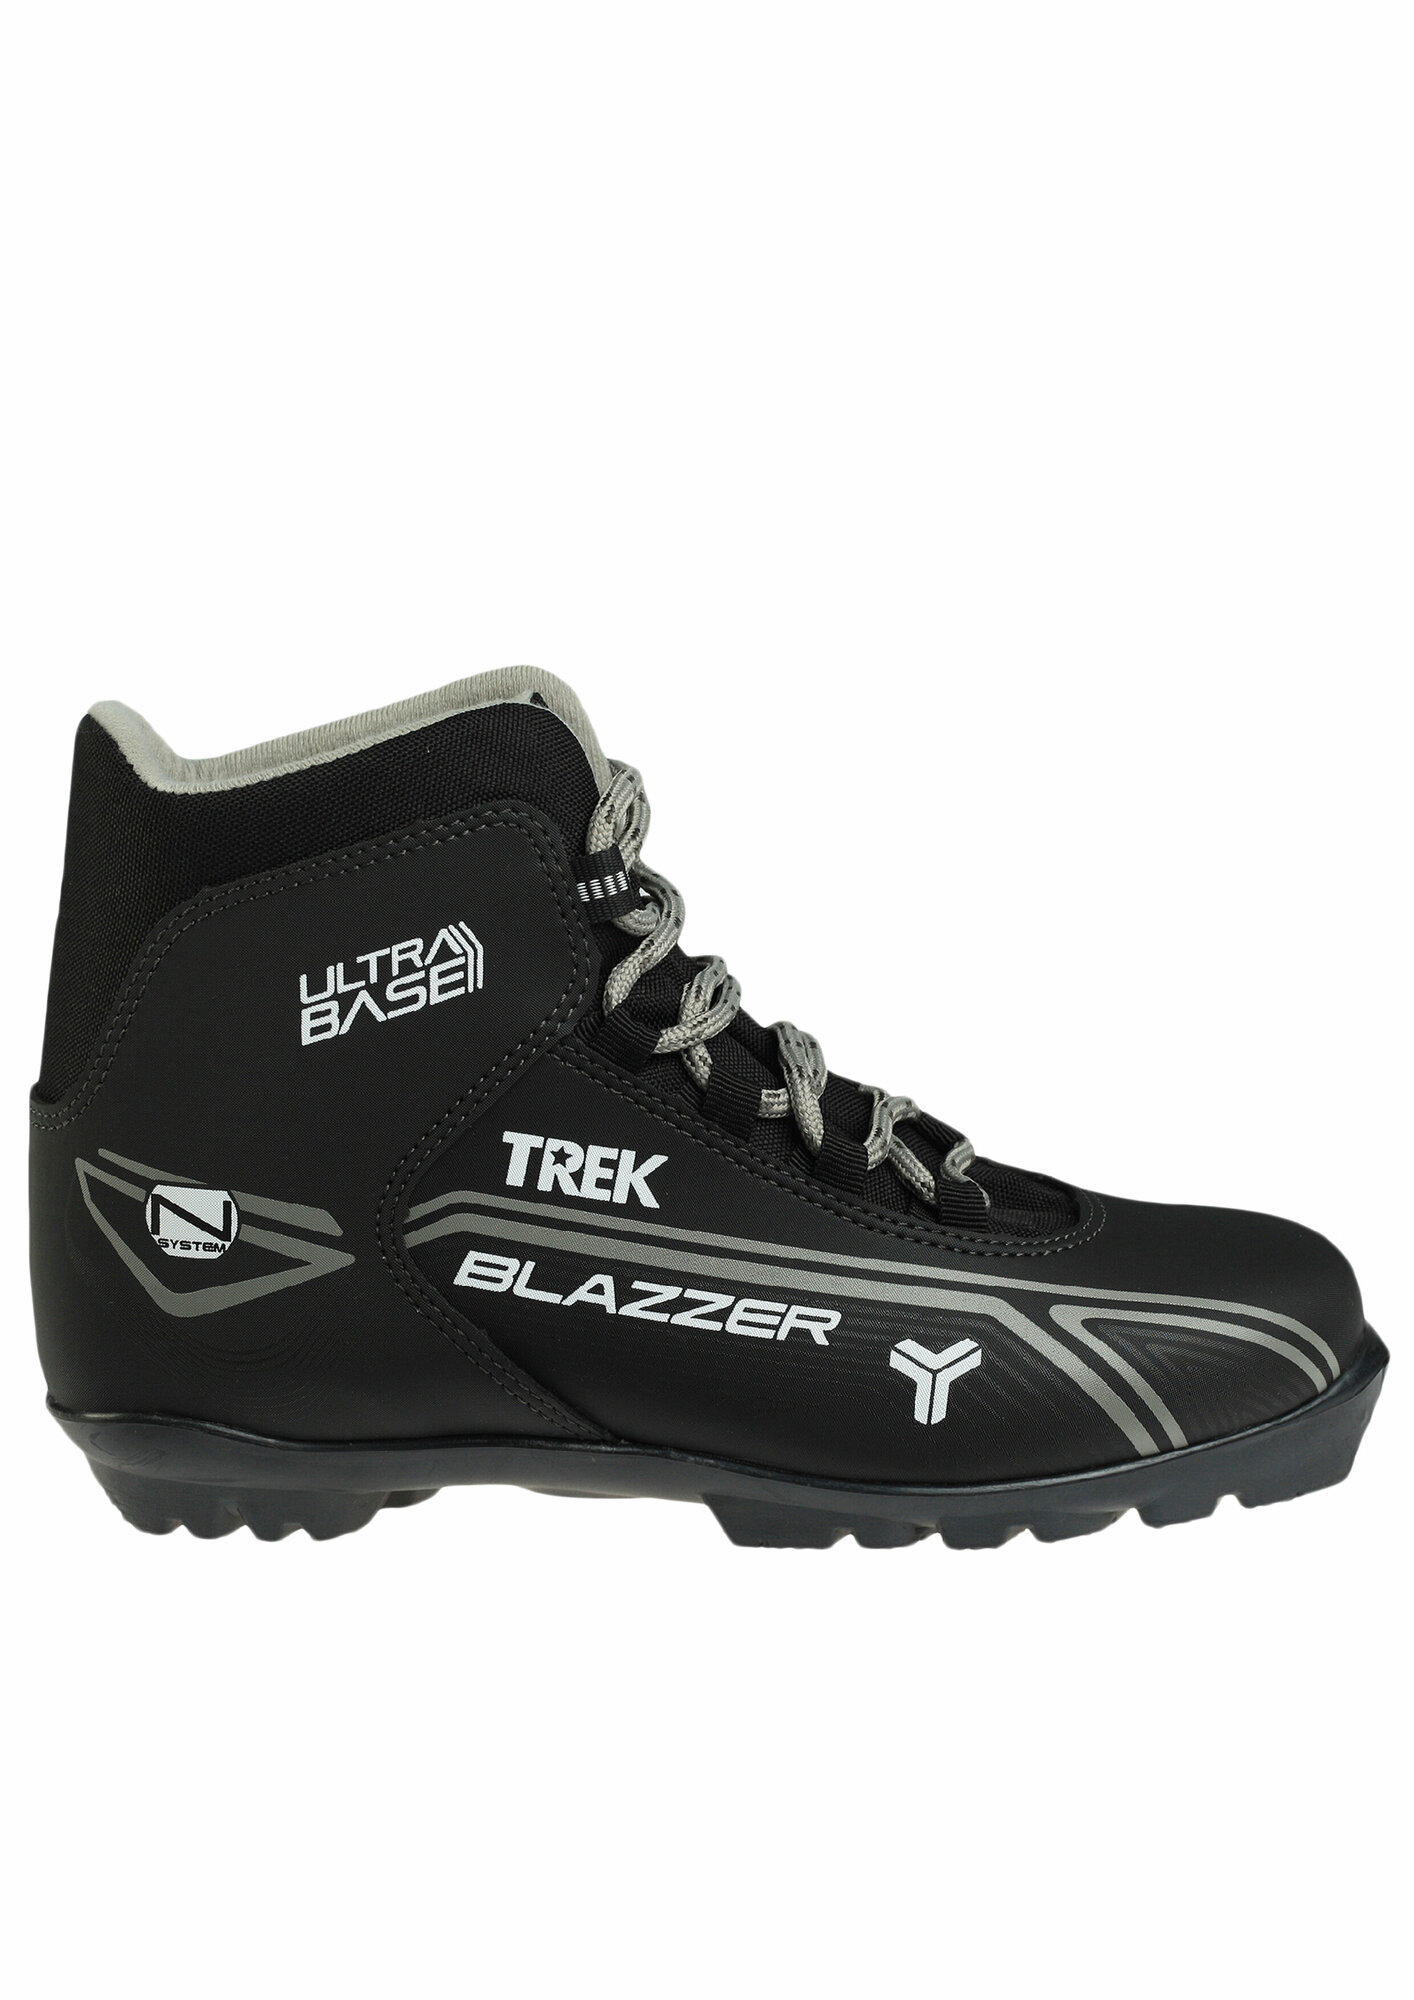 Ботинки лыжные NNN TREK Blazzer4 черные размер RU45 EU46 CM29